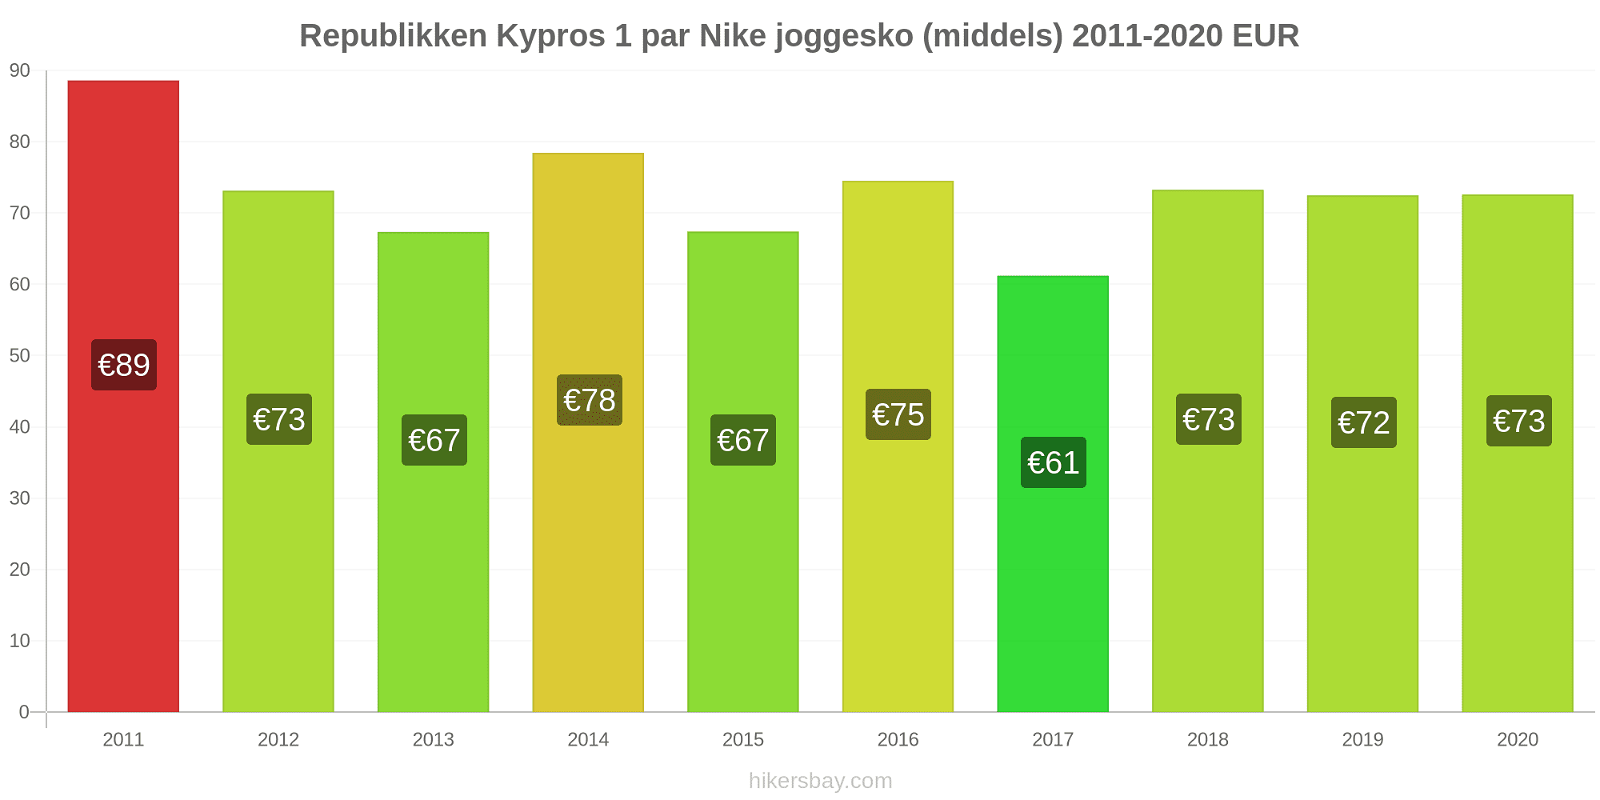 Republikken Kypros prisendringer 1 par Nike joggesko (middels) hikersbay.com